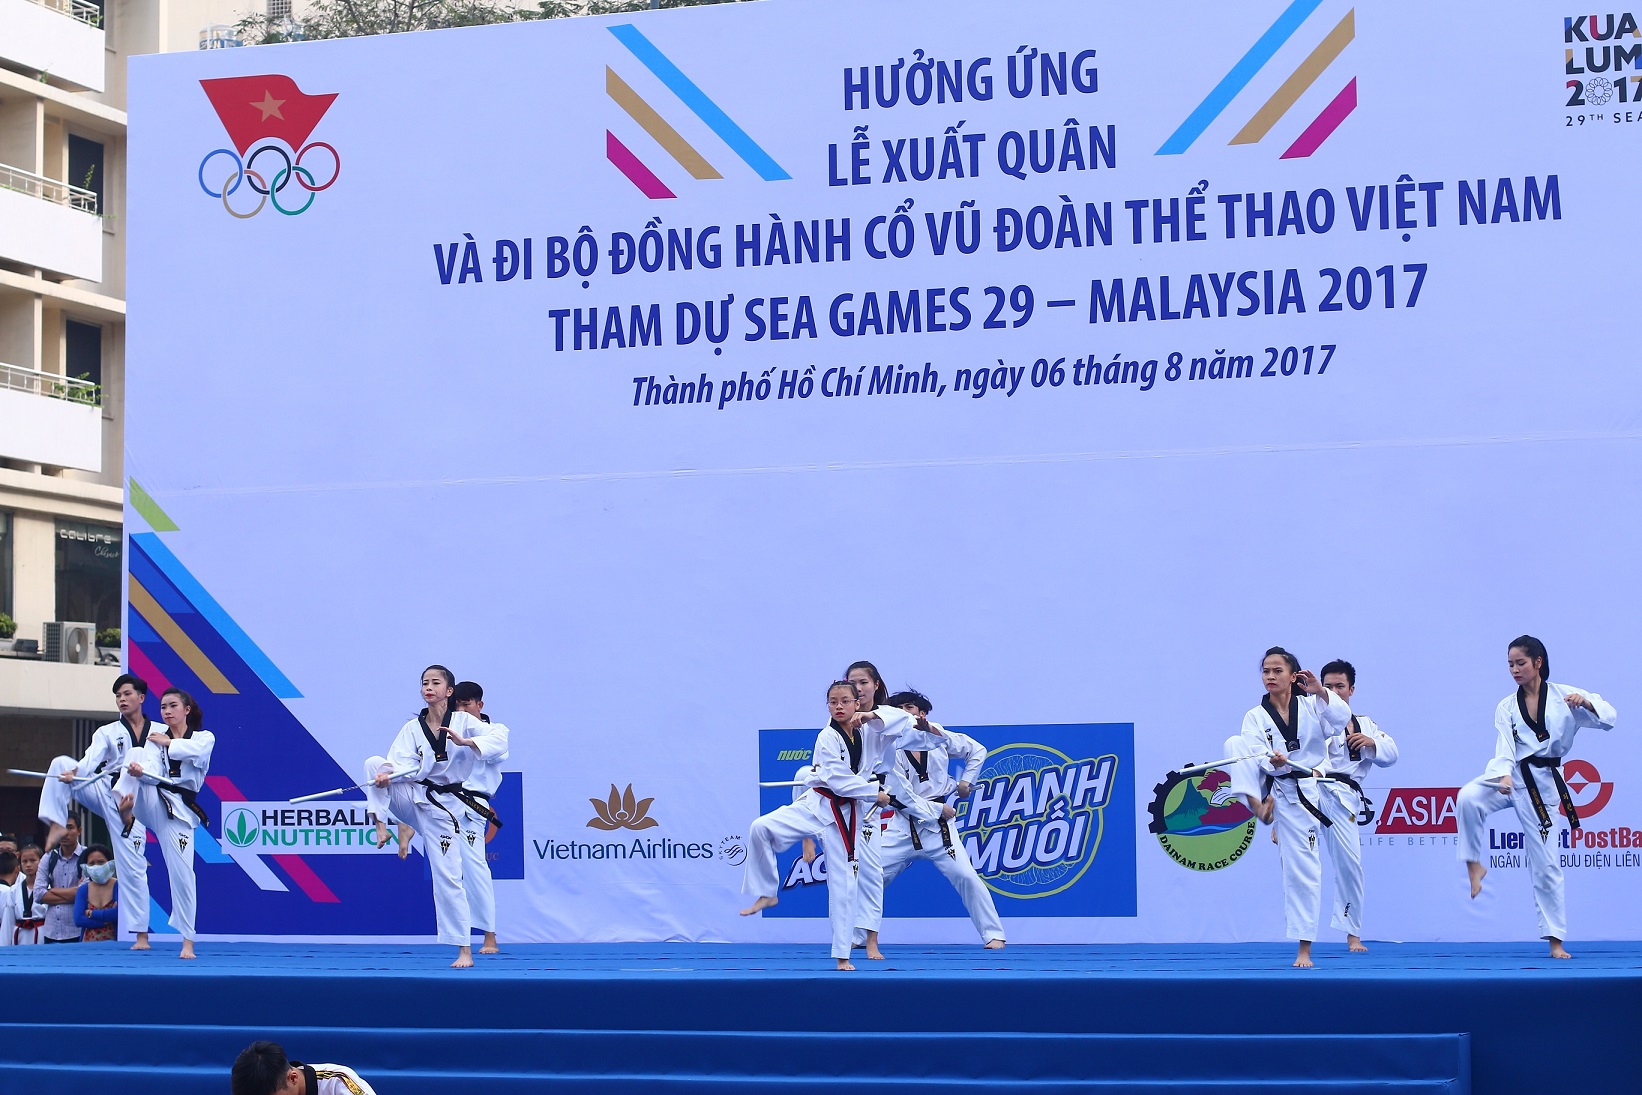 Hàng ngàn người “phủ xanh” phố đi bộ cổ vũ Đoàn Thể thao Việt Nam - Hình 2